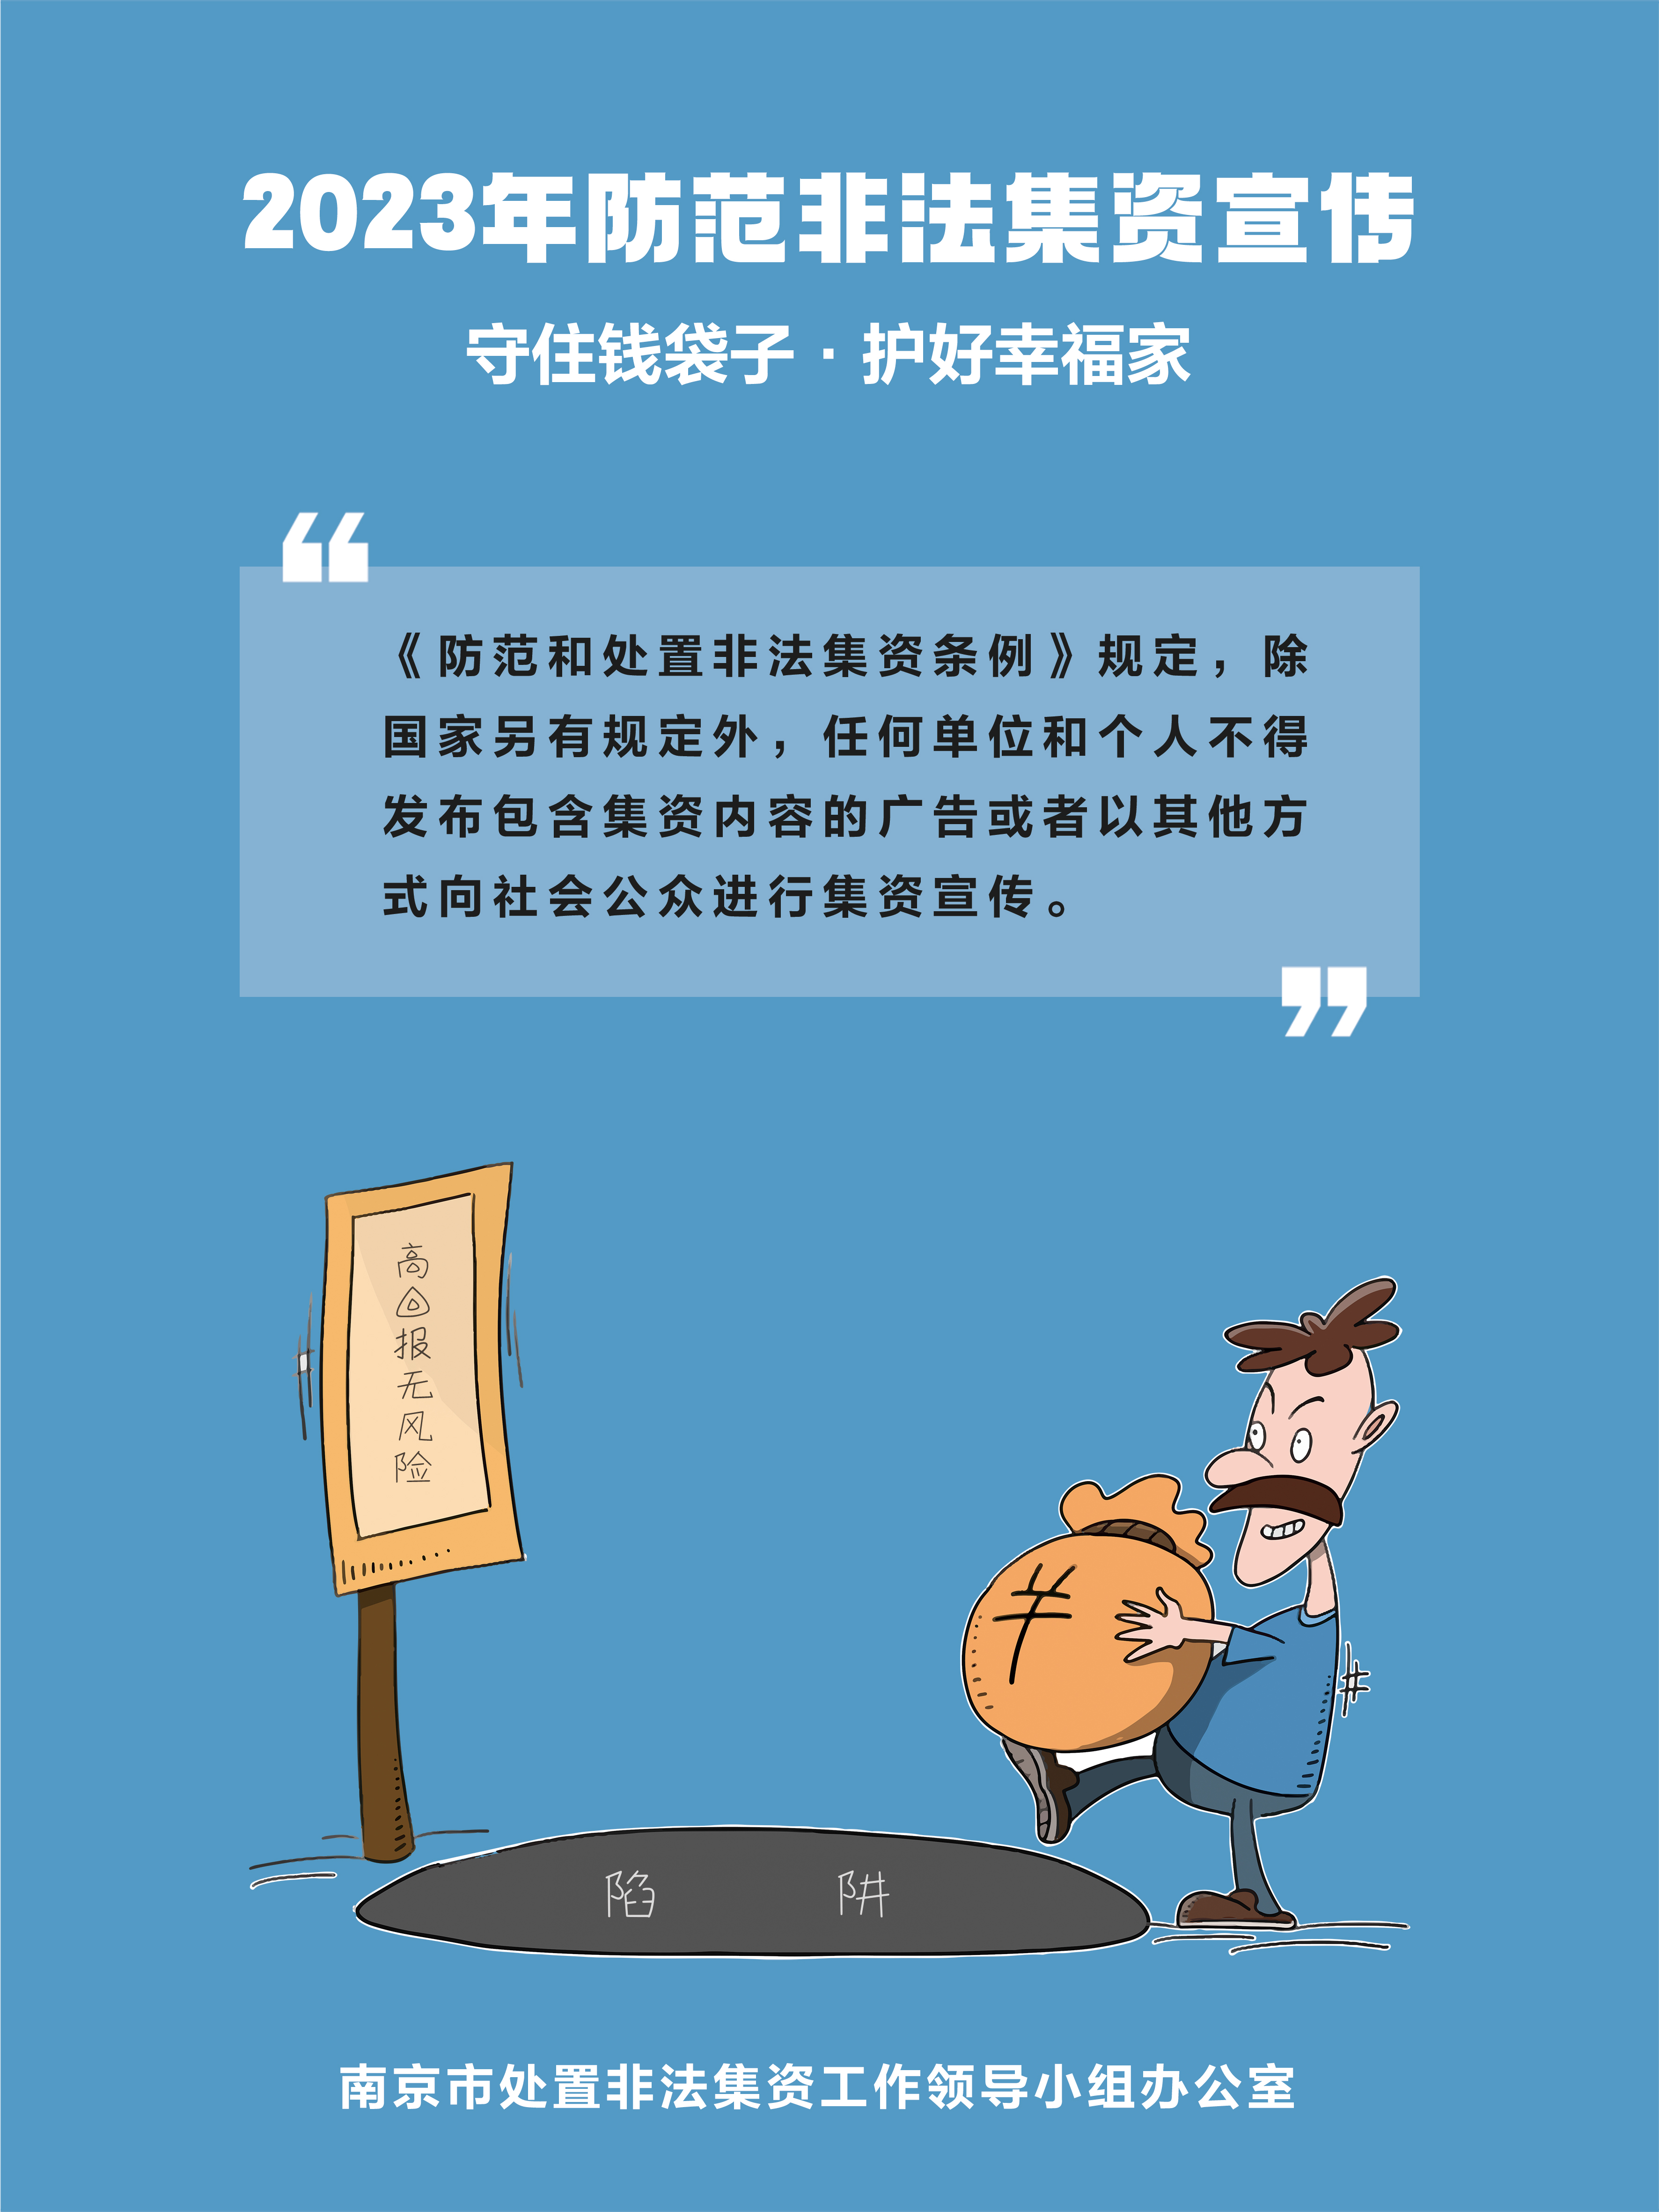 南京市防非宣传海报2